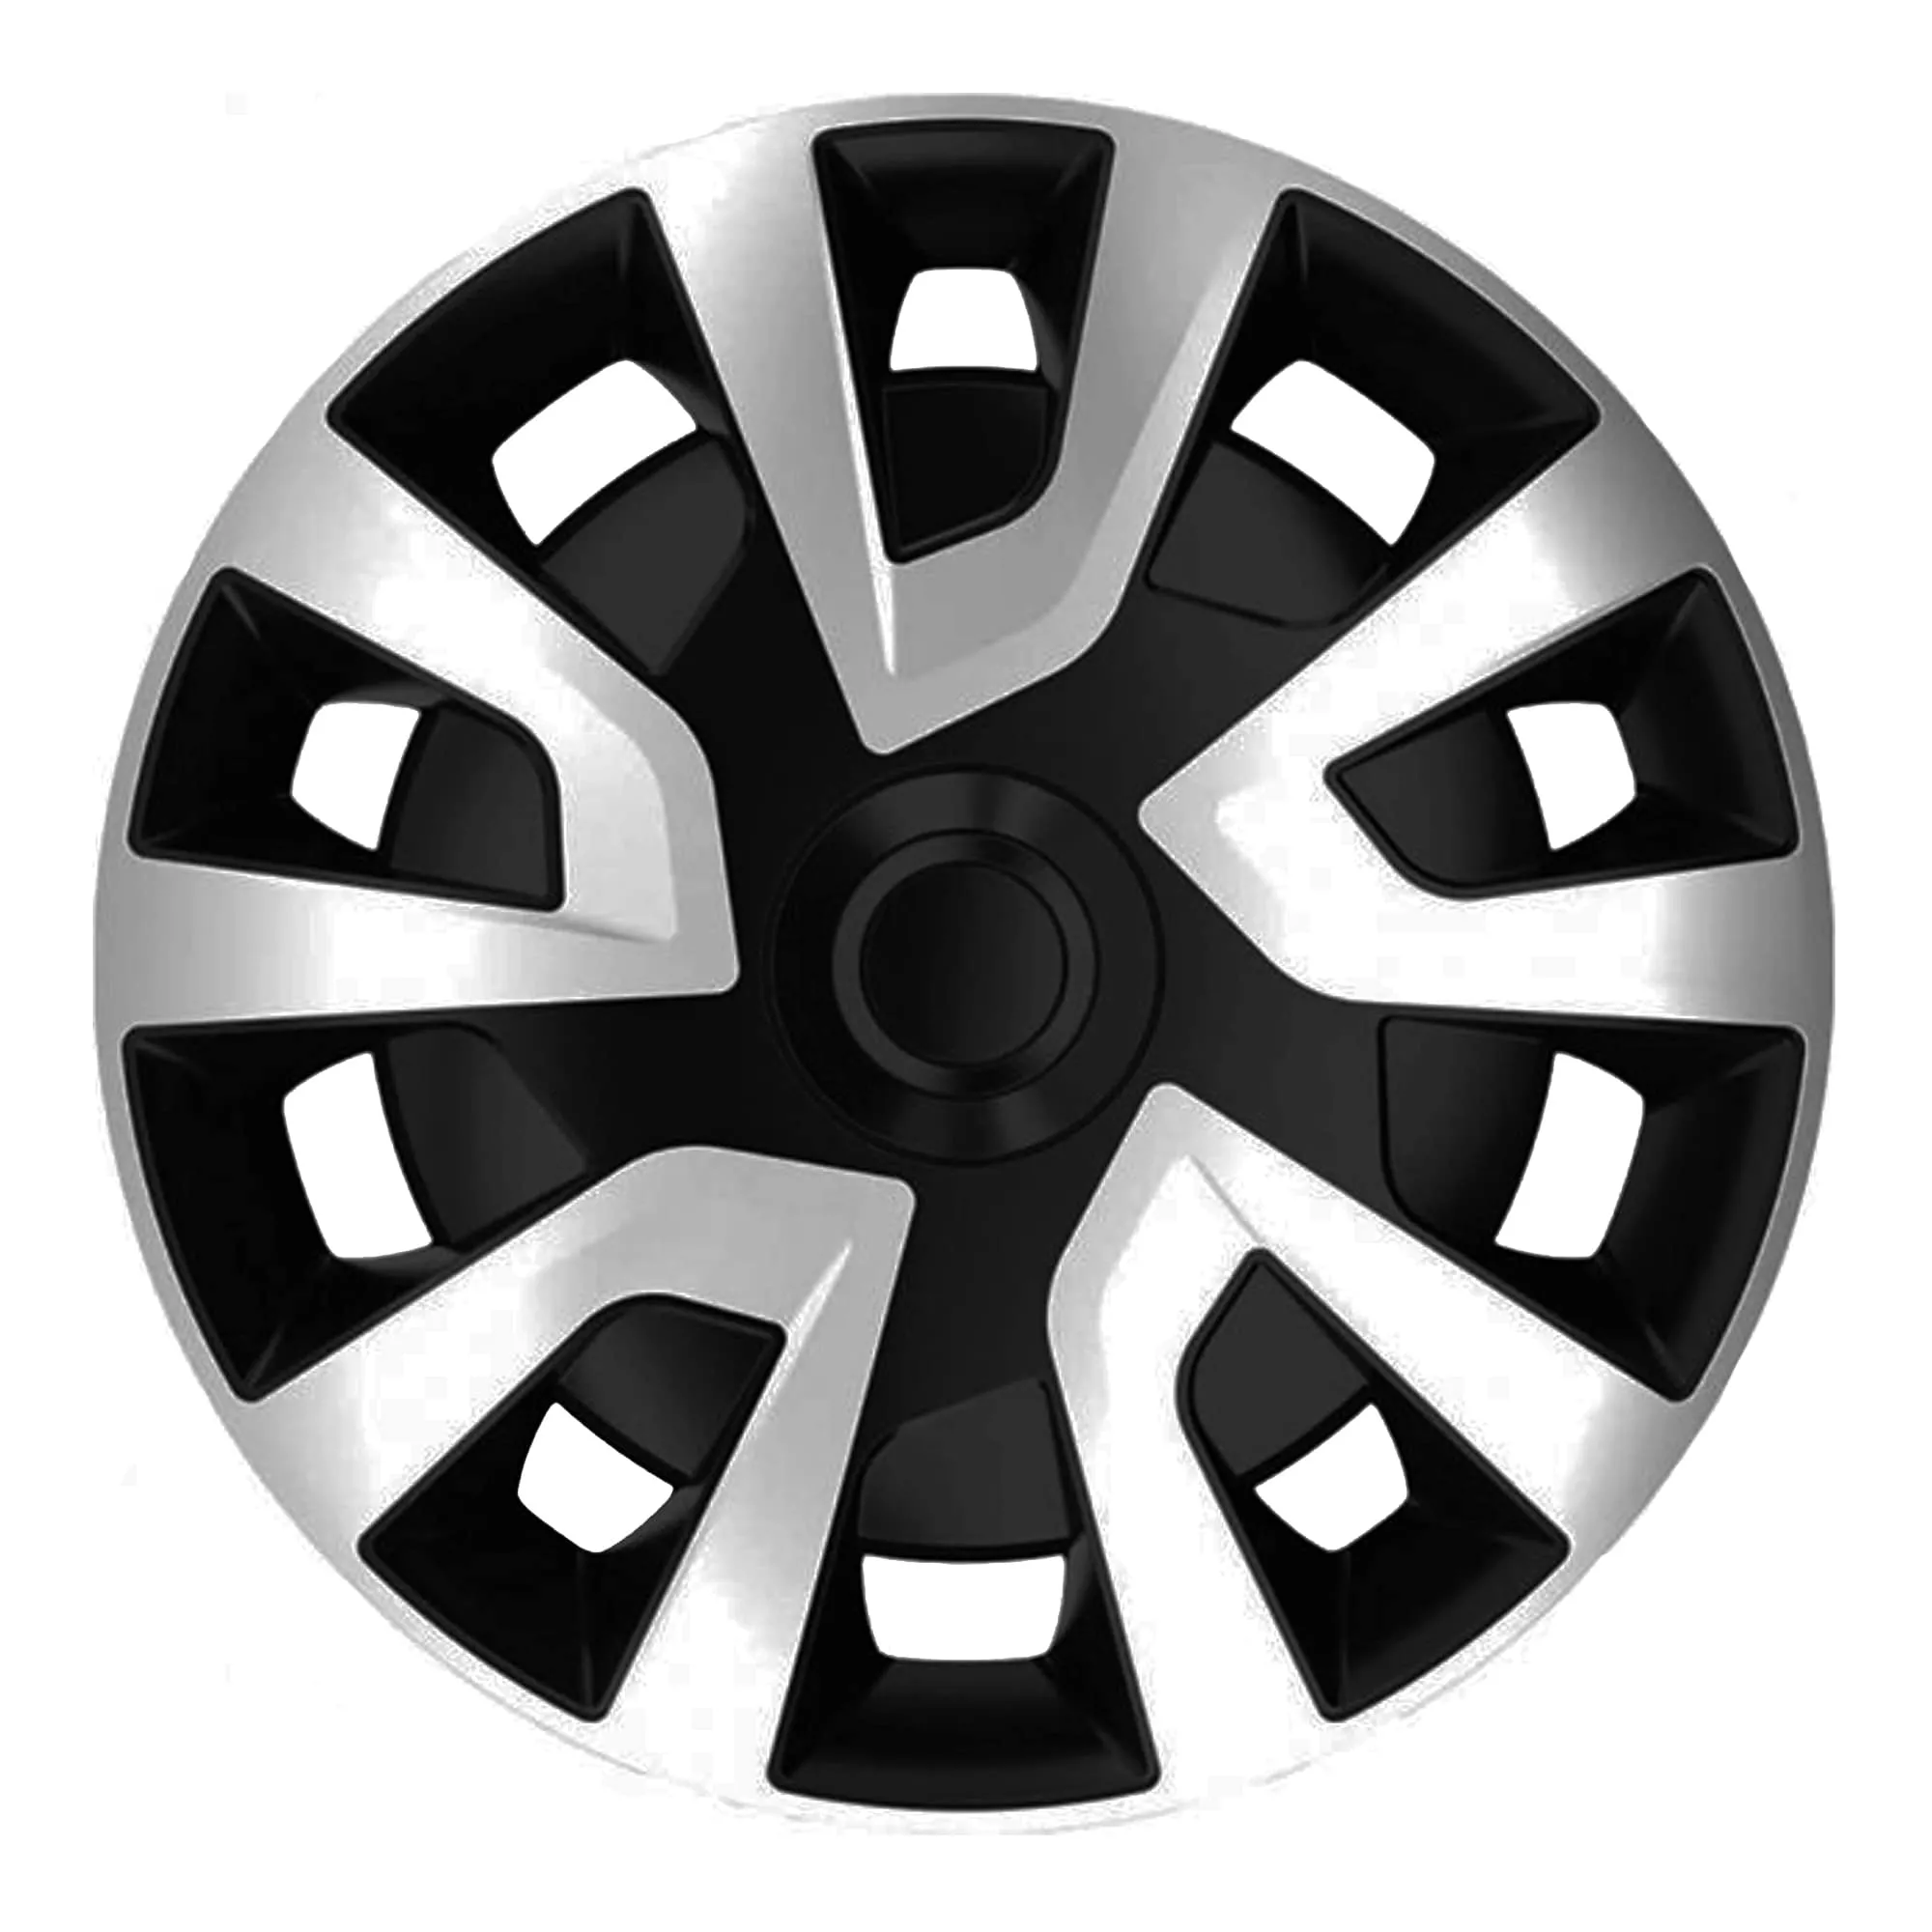 Колпак автомобильный Michelin Revo Van Silver Black R15" 033528 (33528)